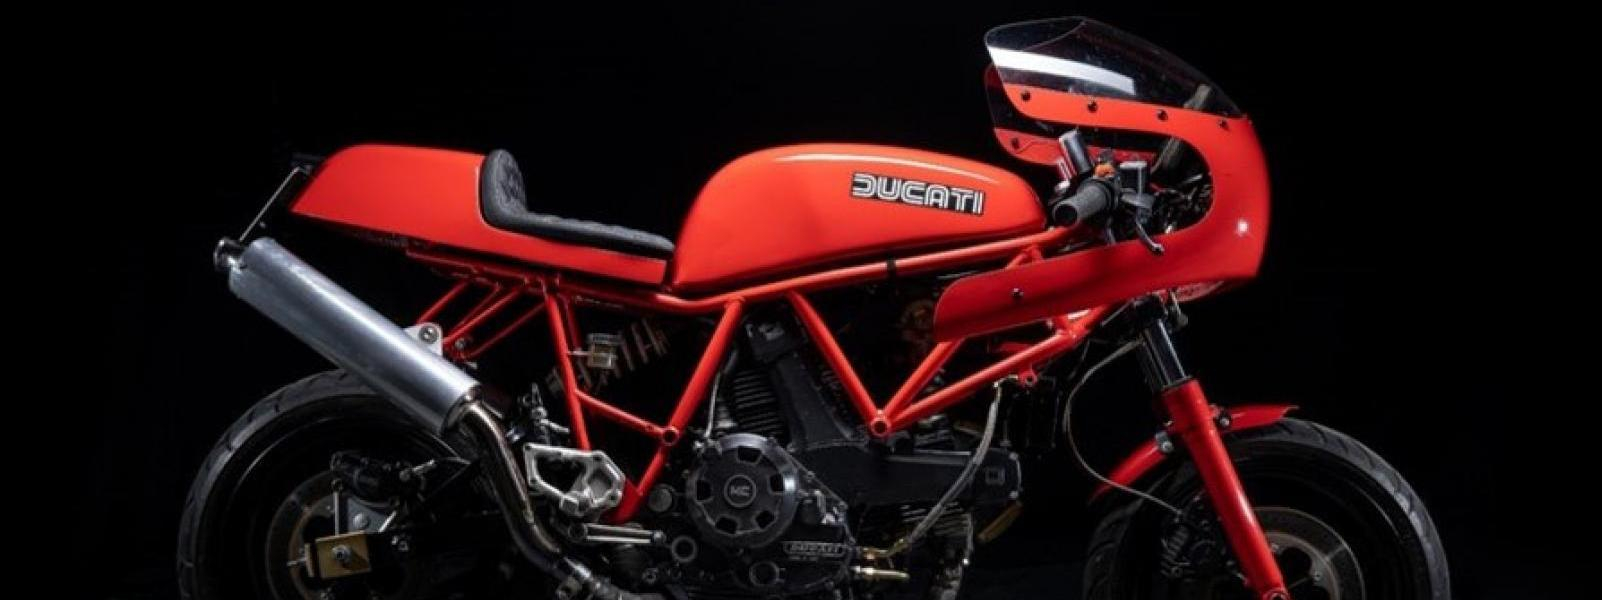 Umbau von Ducati Sitzbänken